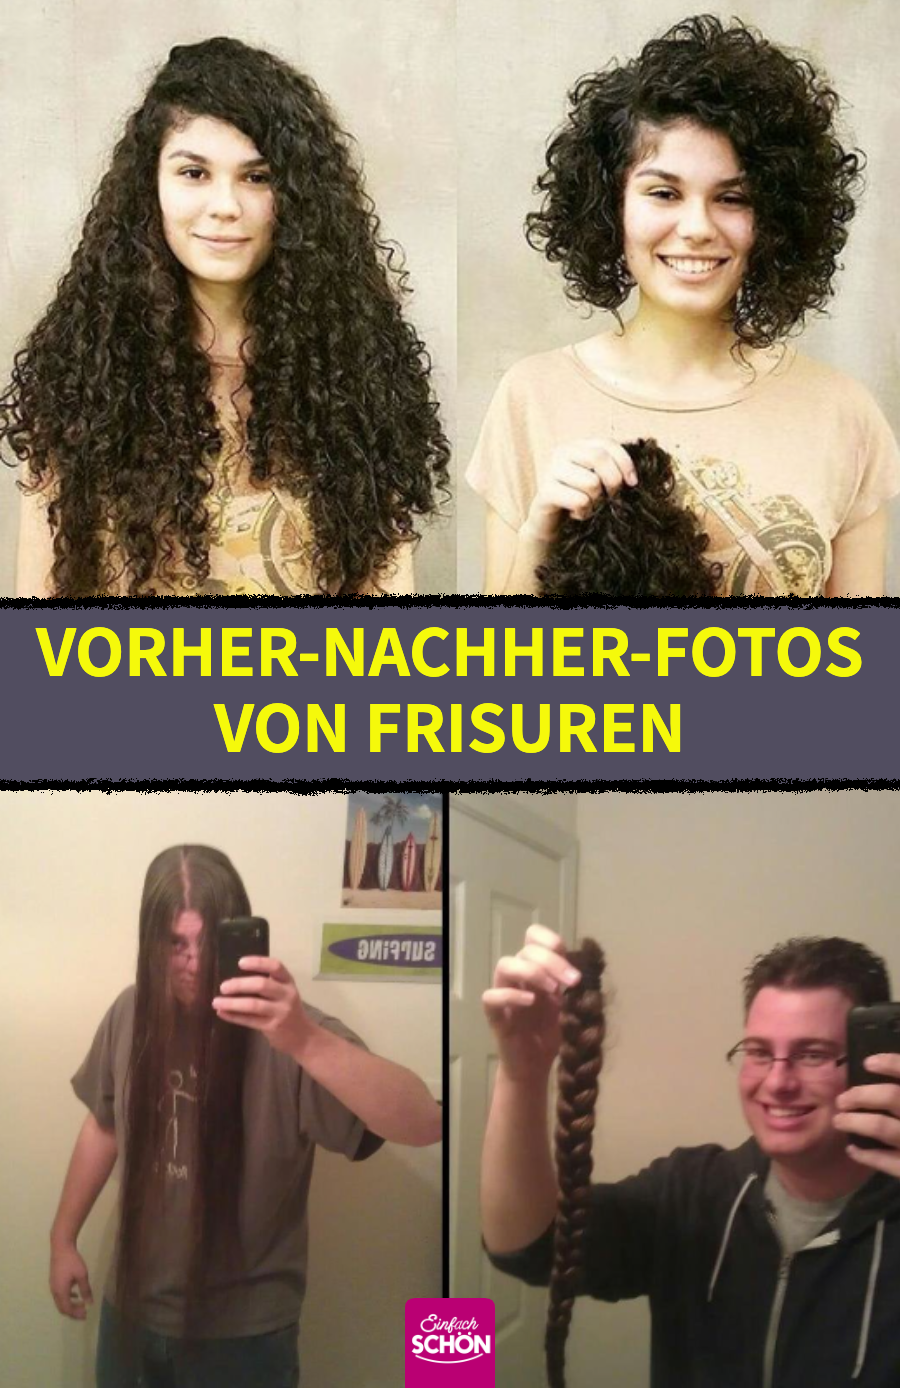 15 Vorher-nachher-Bilder von Leuten mit neuer Frisur